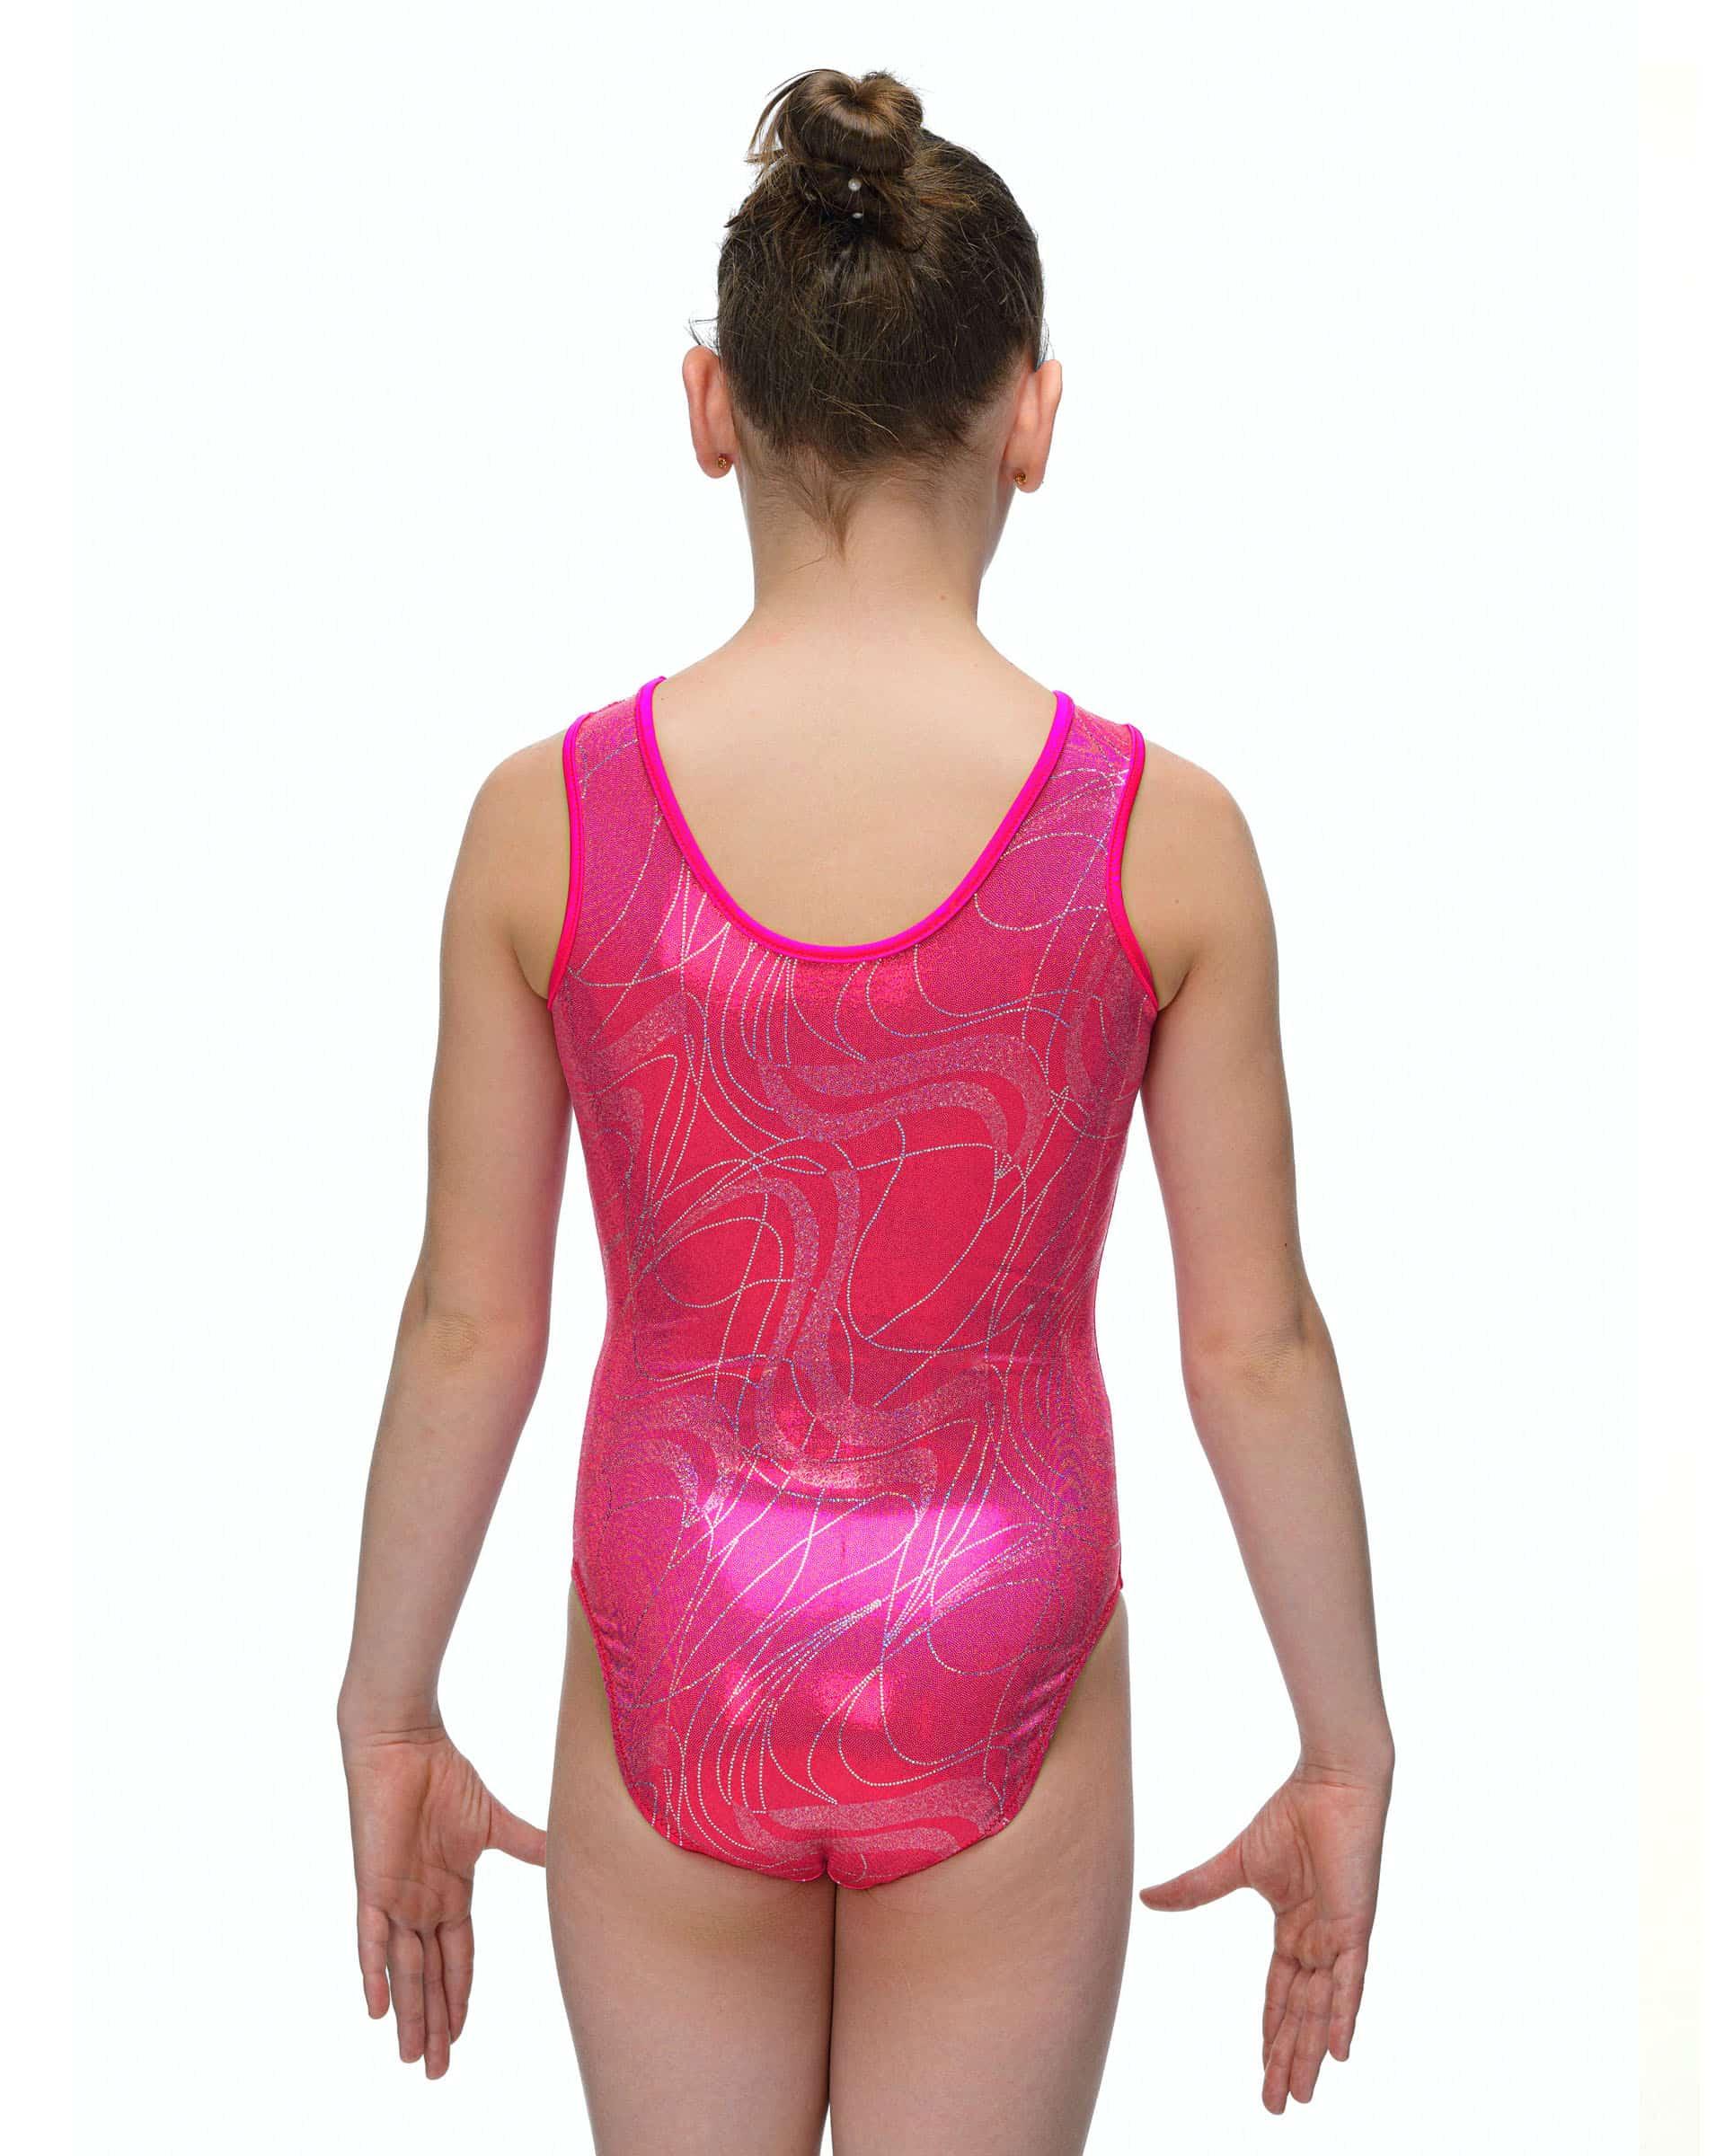 Купальник женский для спортивной гимнастики GK Sport 202-29 CHERRY SPARKLE розовый без рукава